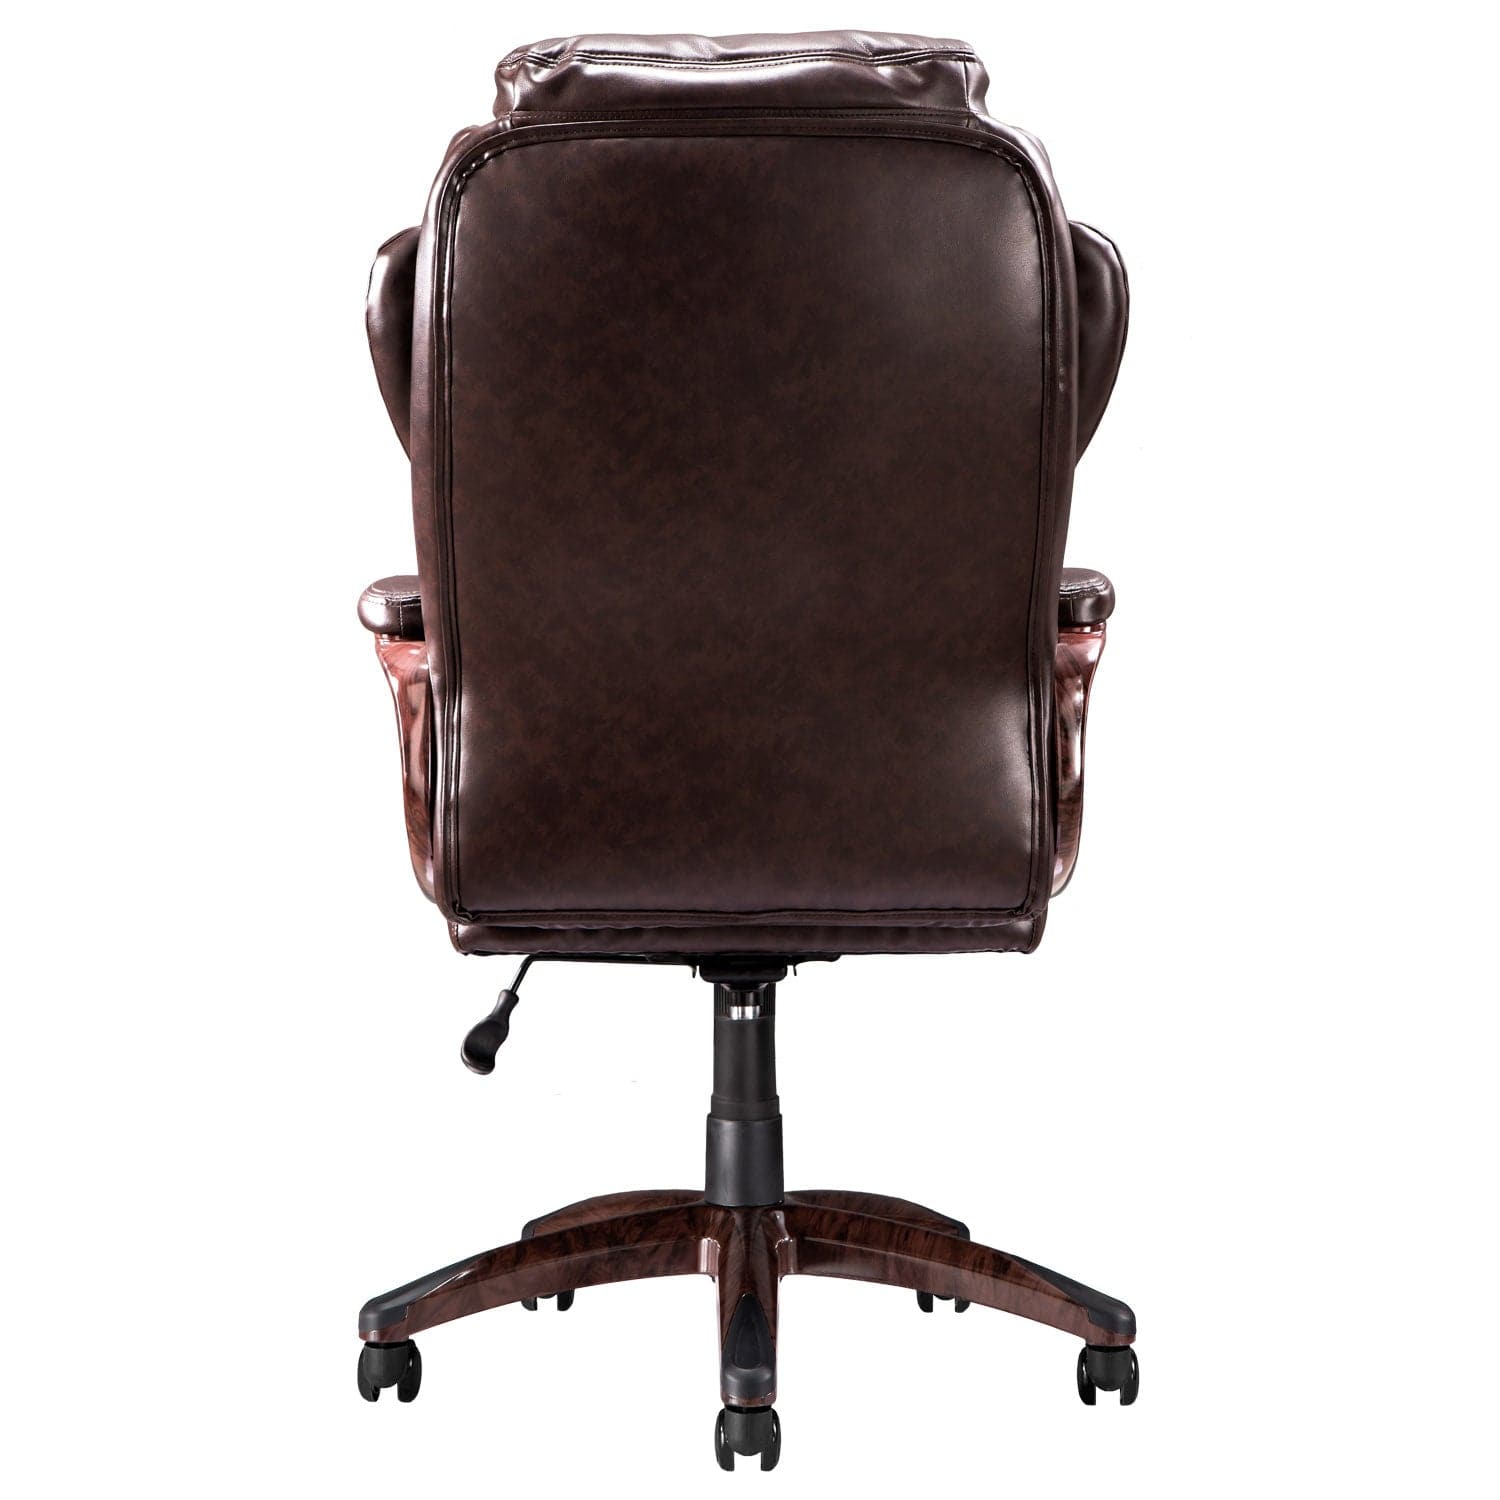 Ovios Executive Office Chair, High Back Desk Chair, Leather Computer Desk Chair For Home Office